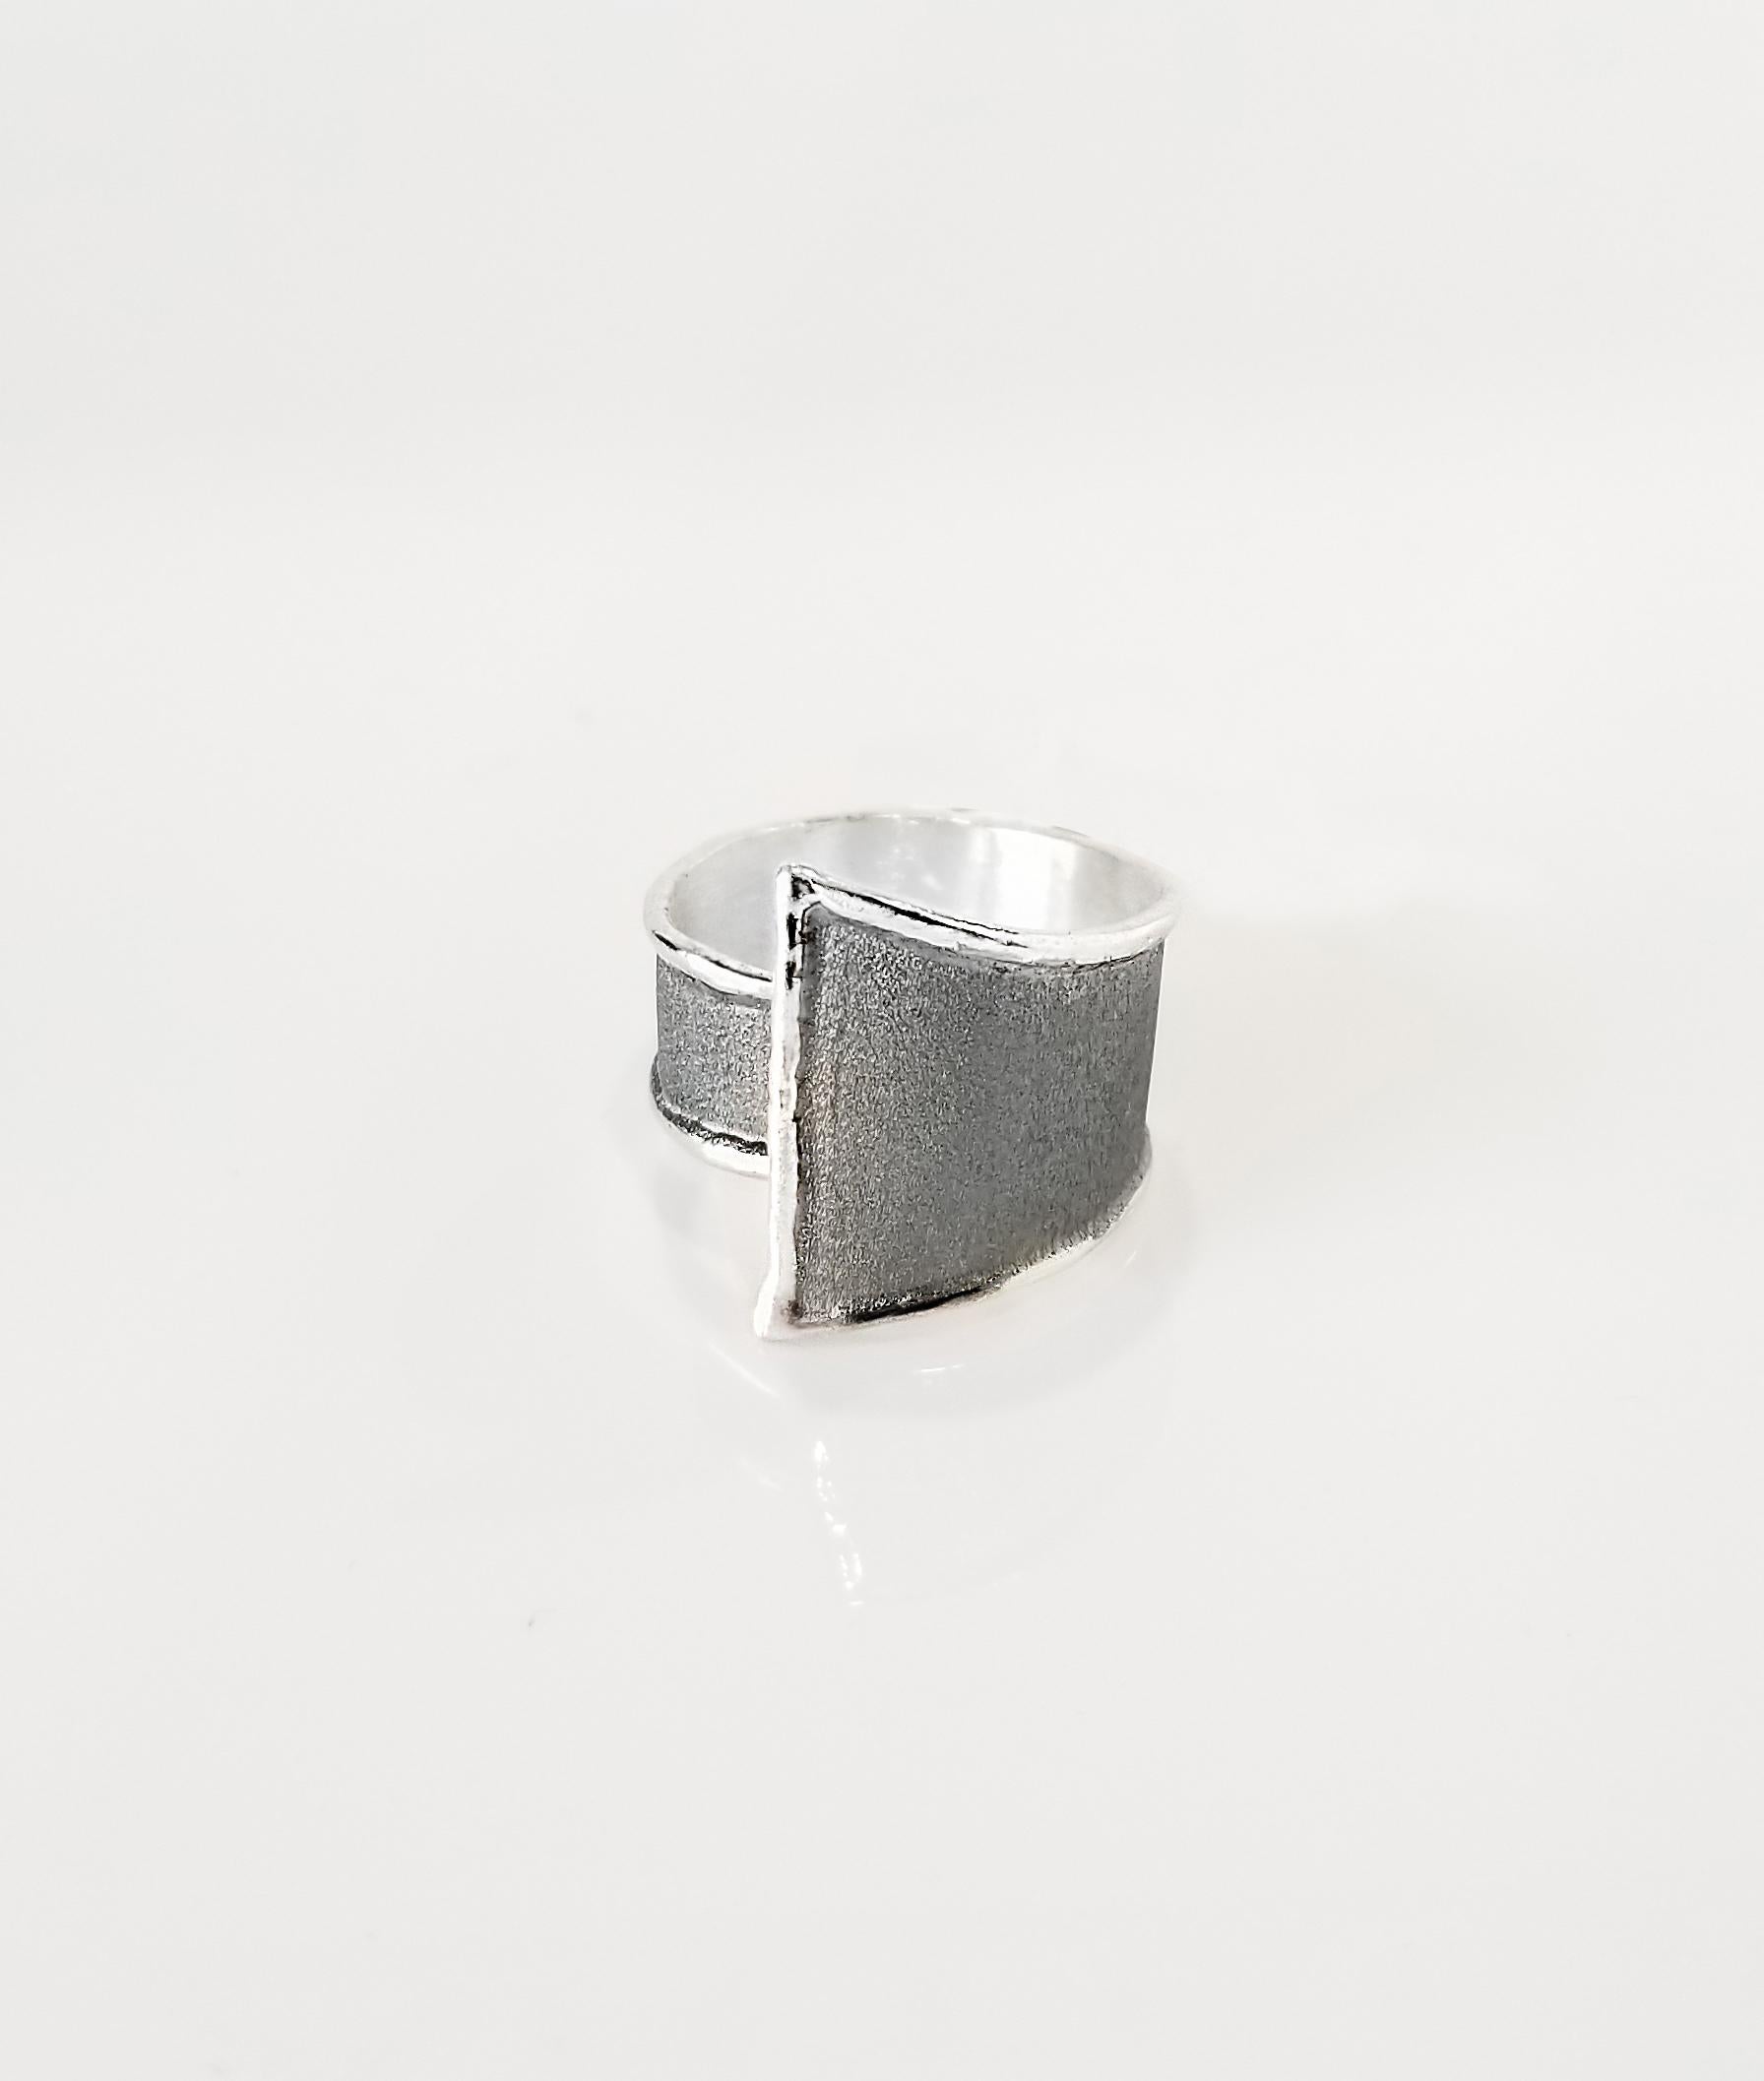 Yianni Creations Hephestos Collection 100% handgefertigter handwerklicher Ring aus Feinsilber. Der Ring zeichnet sich durch ein einzigartiges oxidiertes Rhodium-Finish aus, das durch einzigartige Handwerkstechniken ergänzt wird - gebürstete Textur